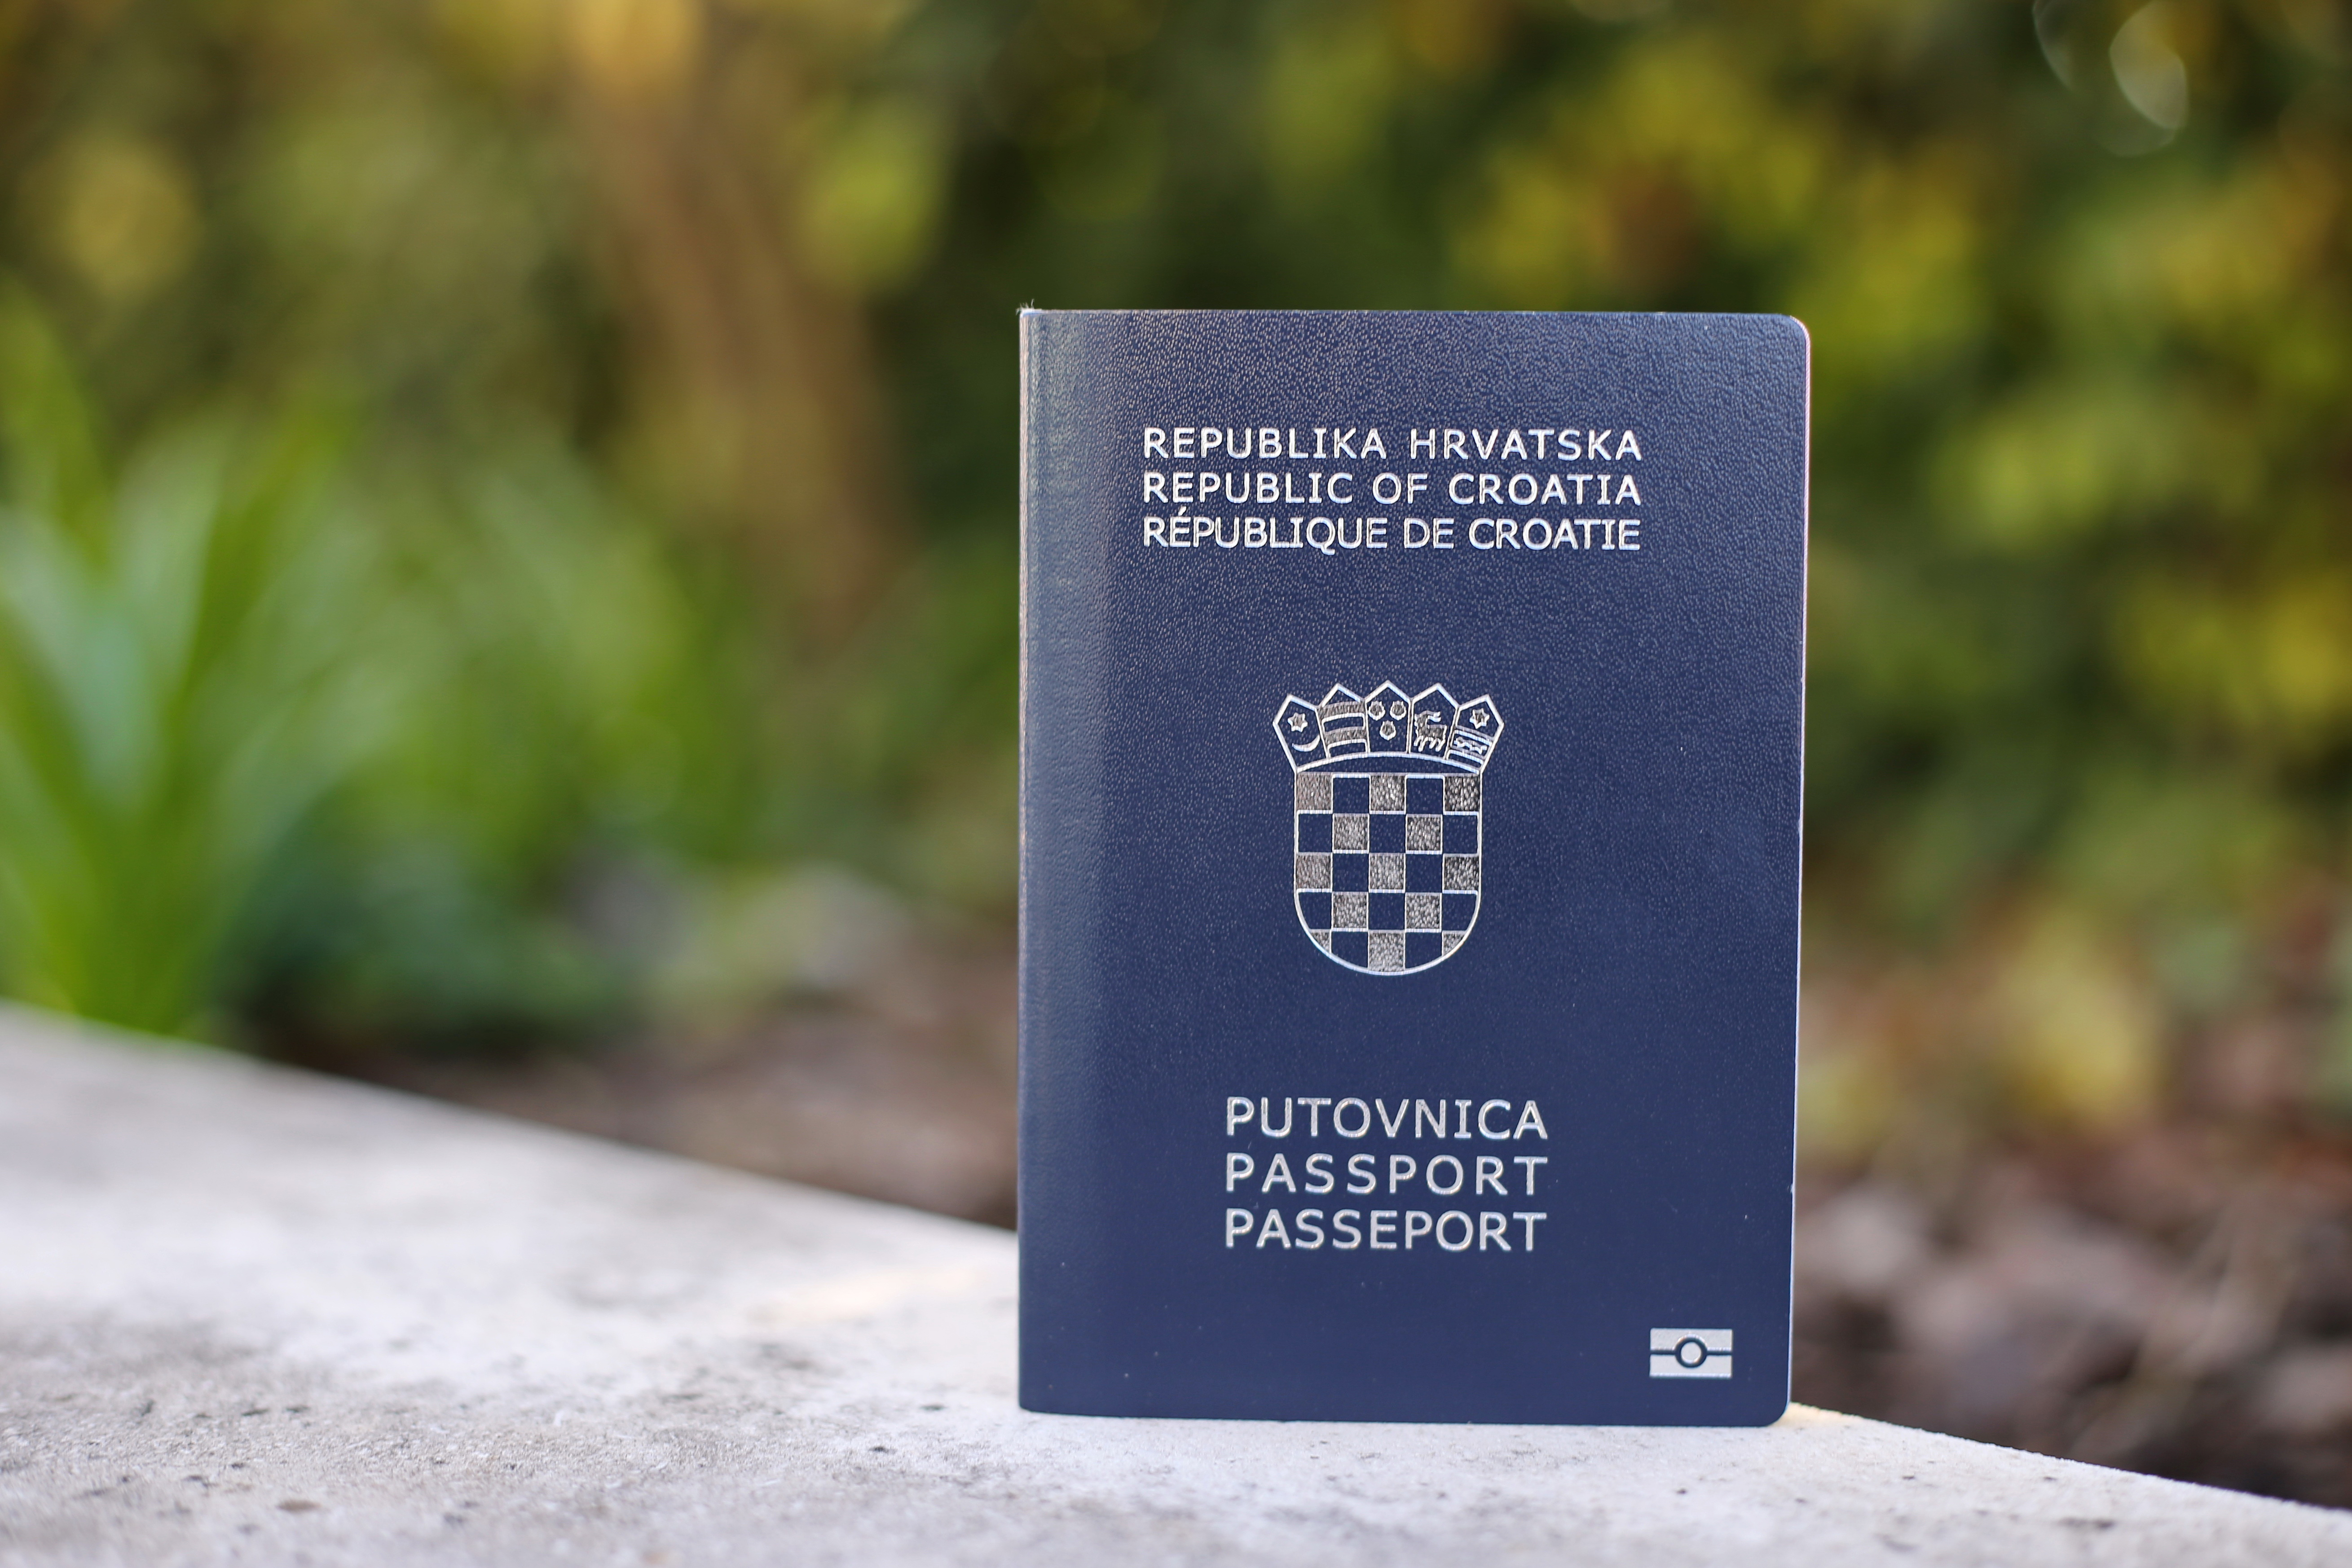 Хорватский паспорт, который могут оформить иностранцы